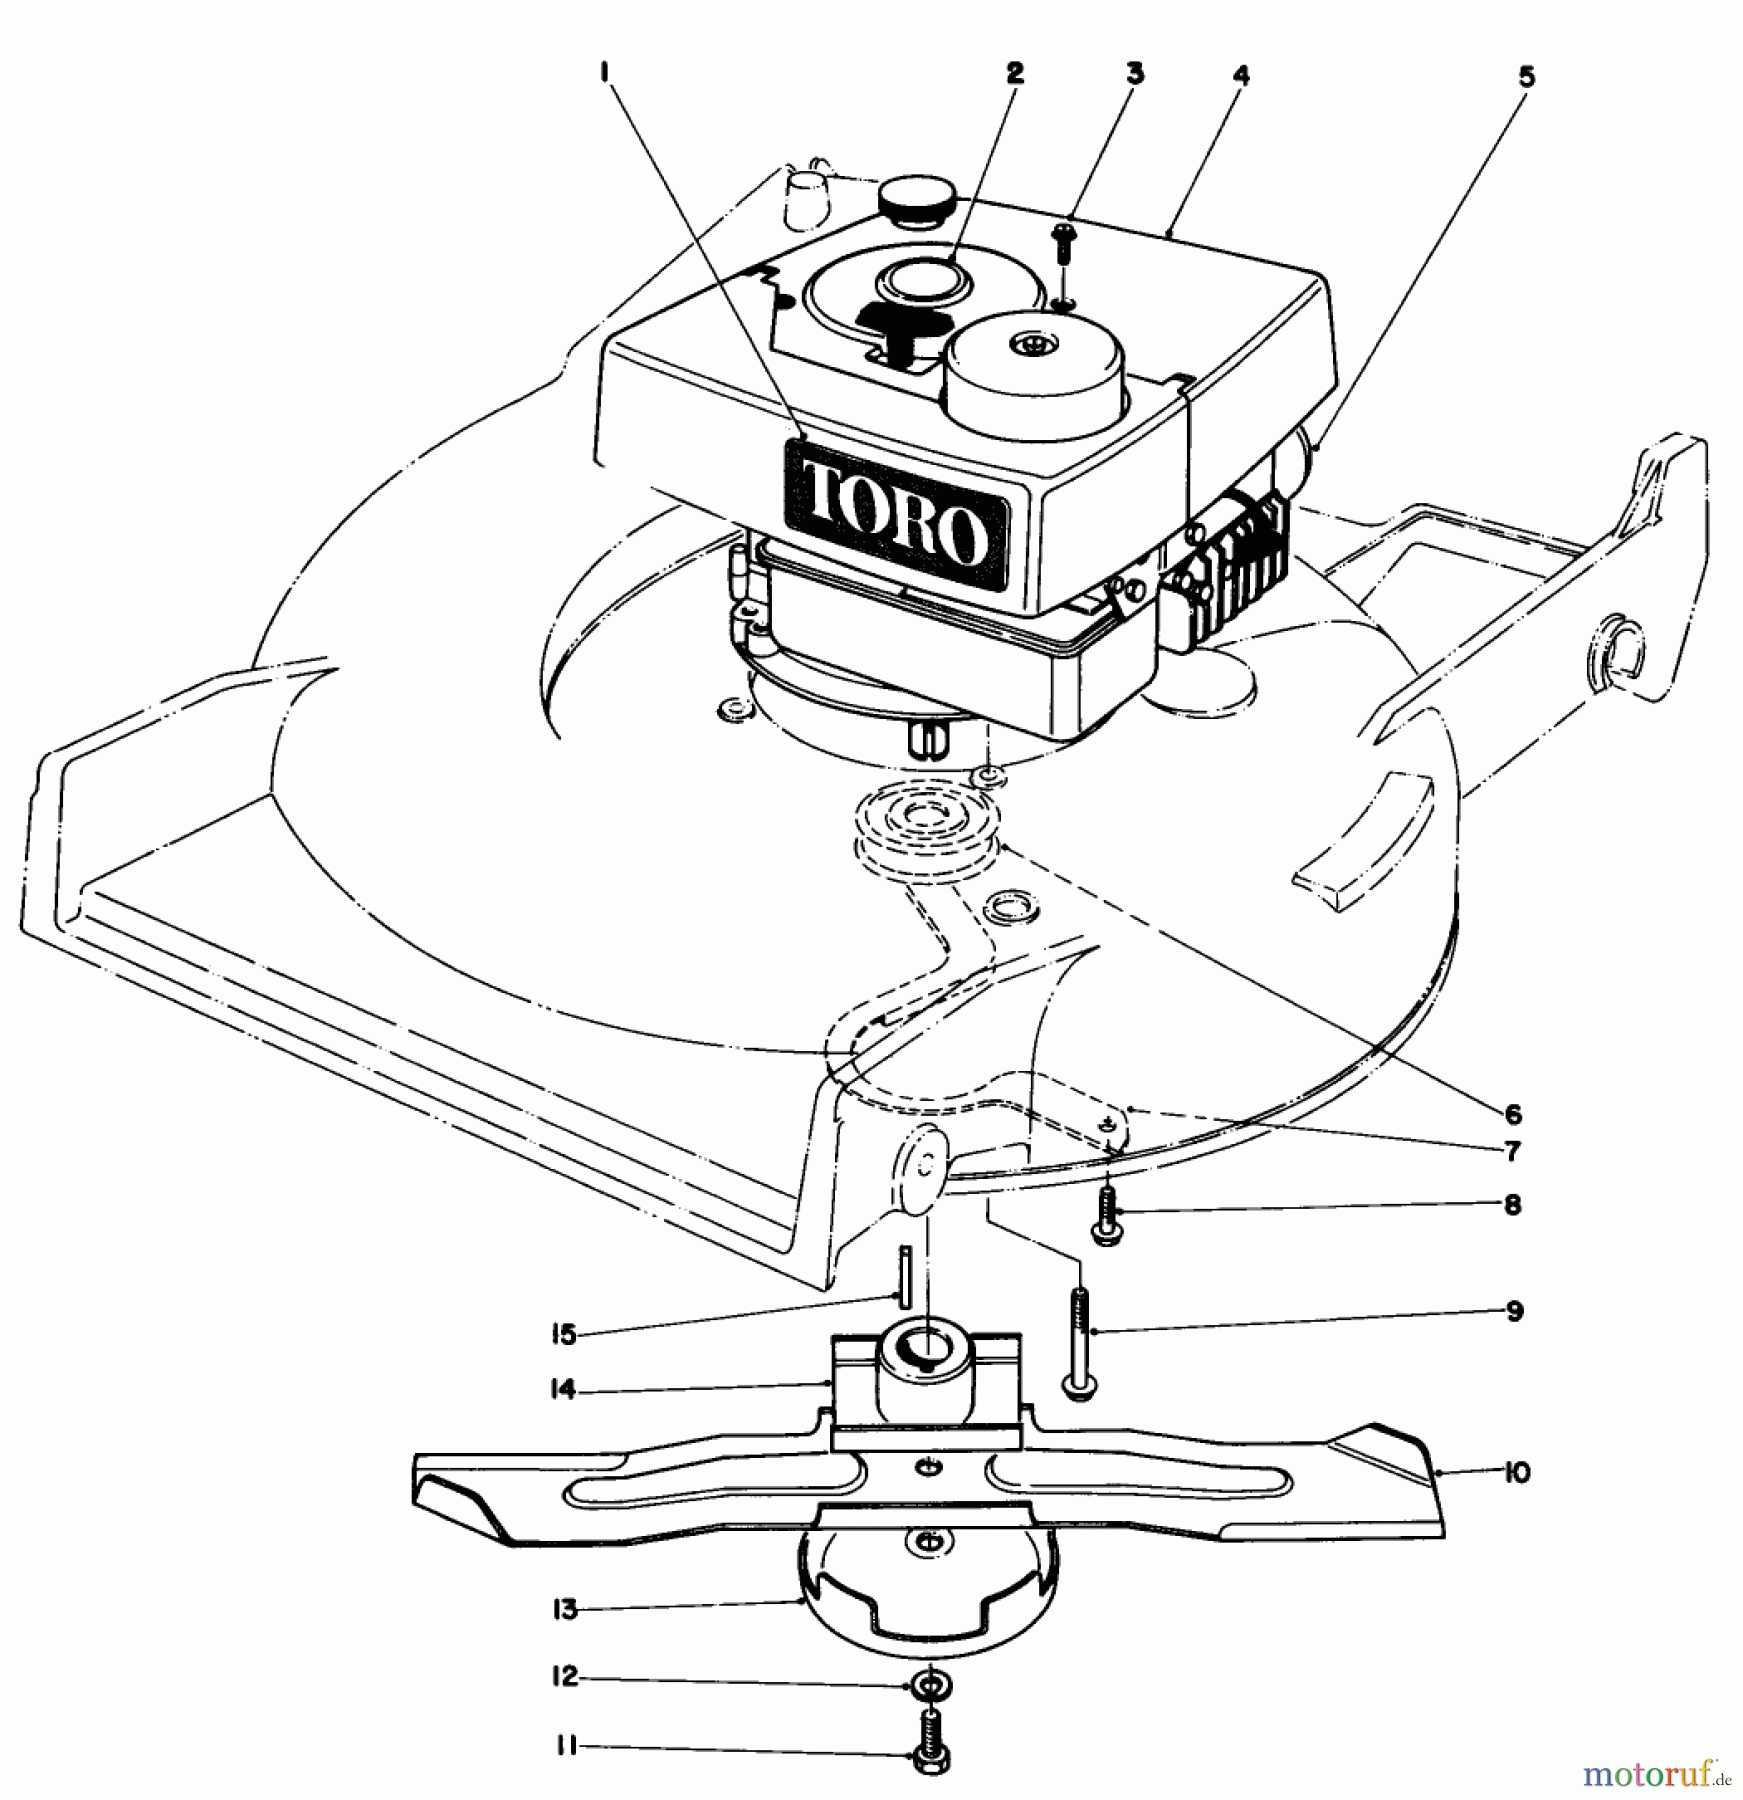  Toro Neu Mowers, Walk-Behind Seite 1 20752 - Toro Lawnmower, 1982 (2000001-2999999) ENGINE ASSEMBLY